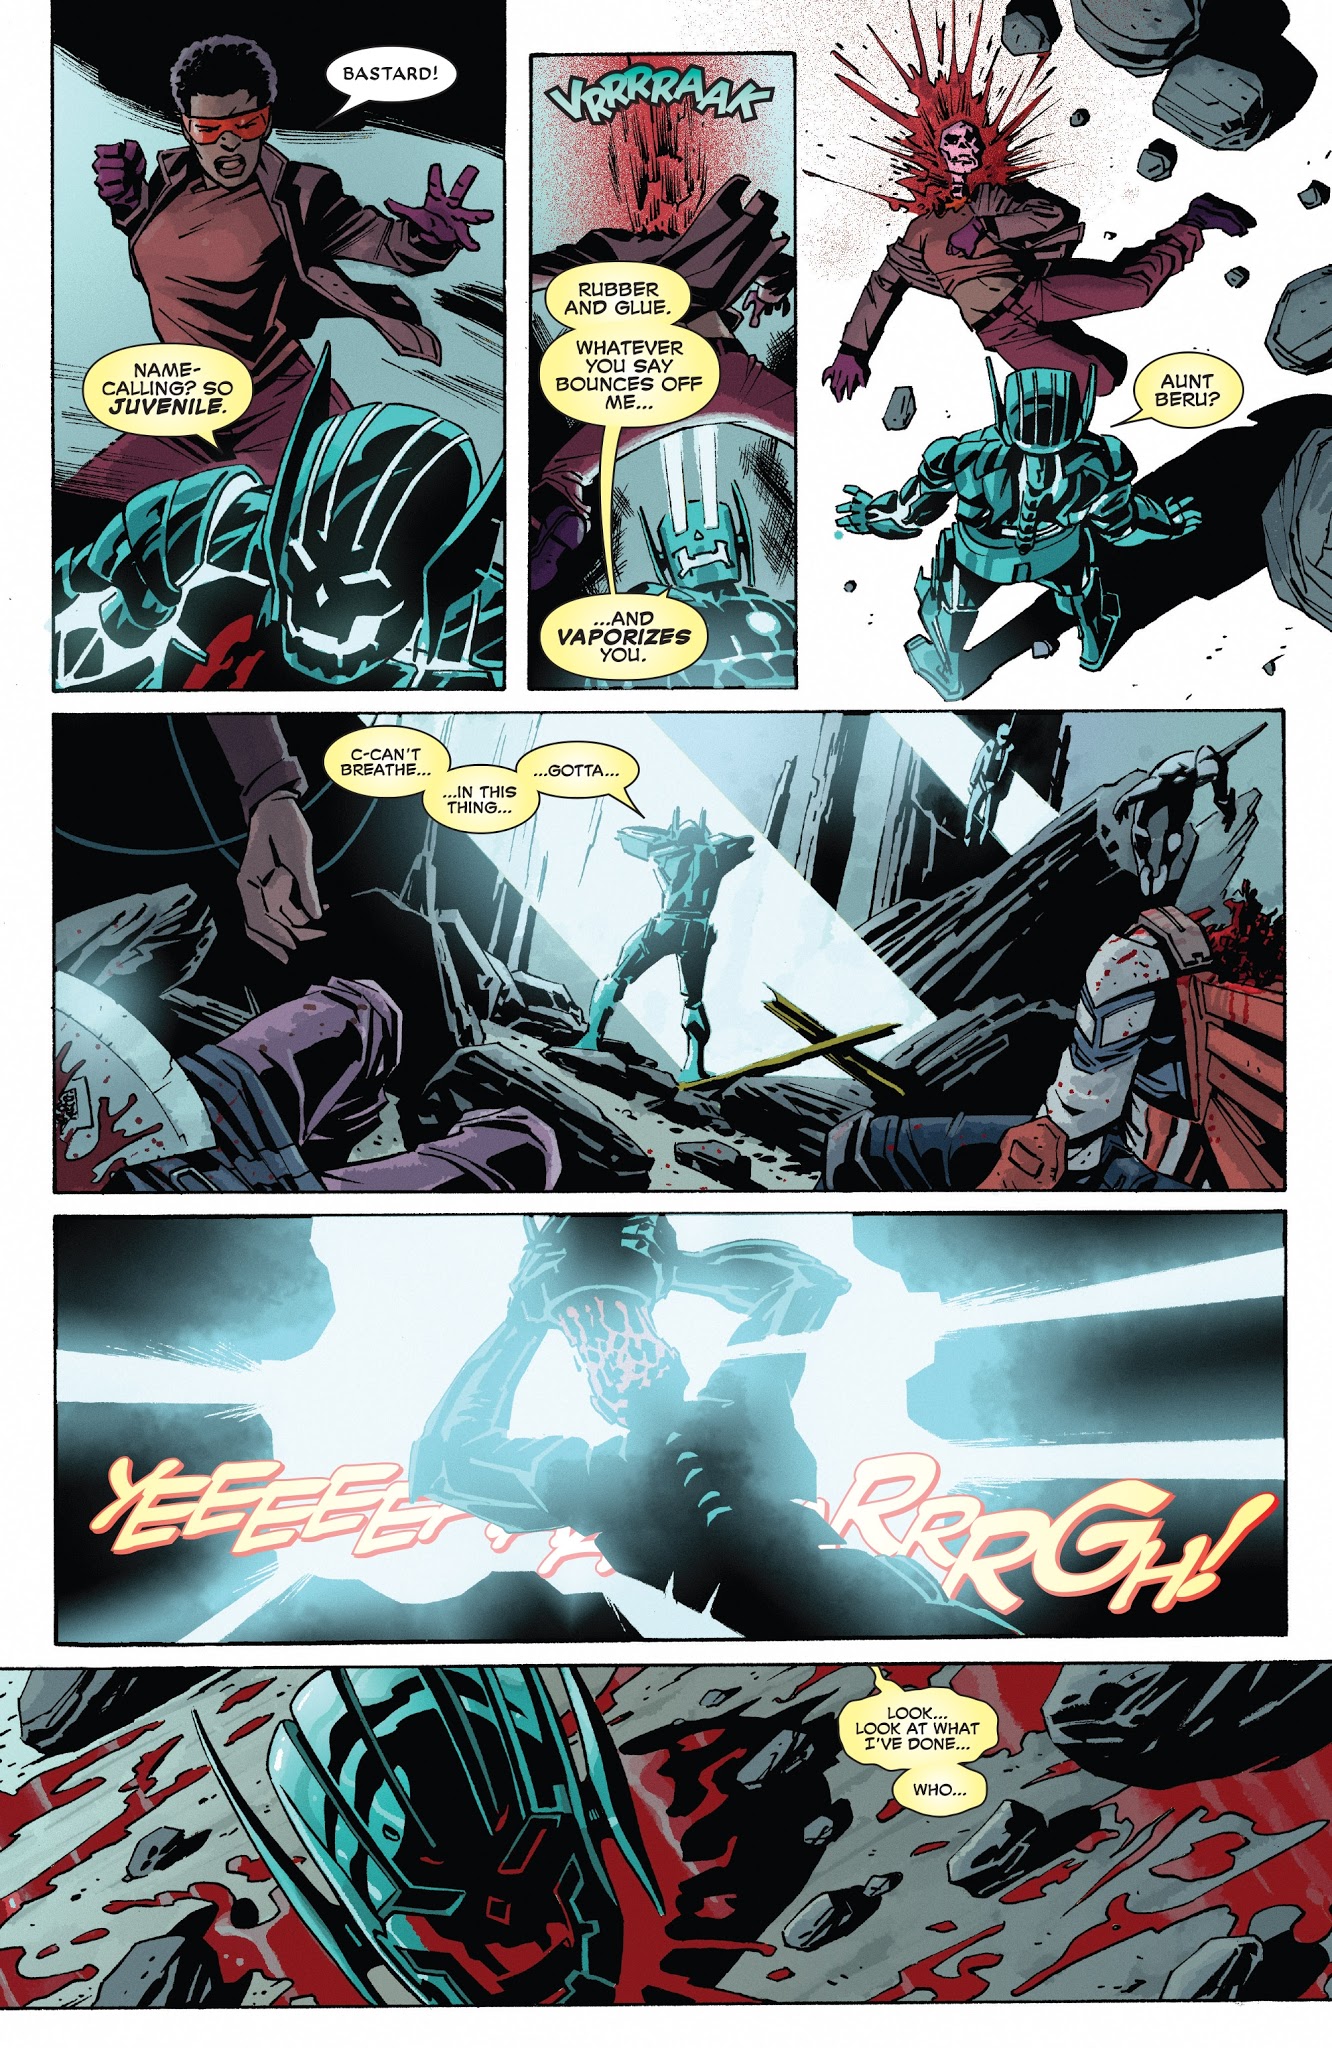 Deadpool Kills The Marvel Universe Again Issue 4 Read